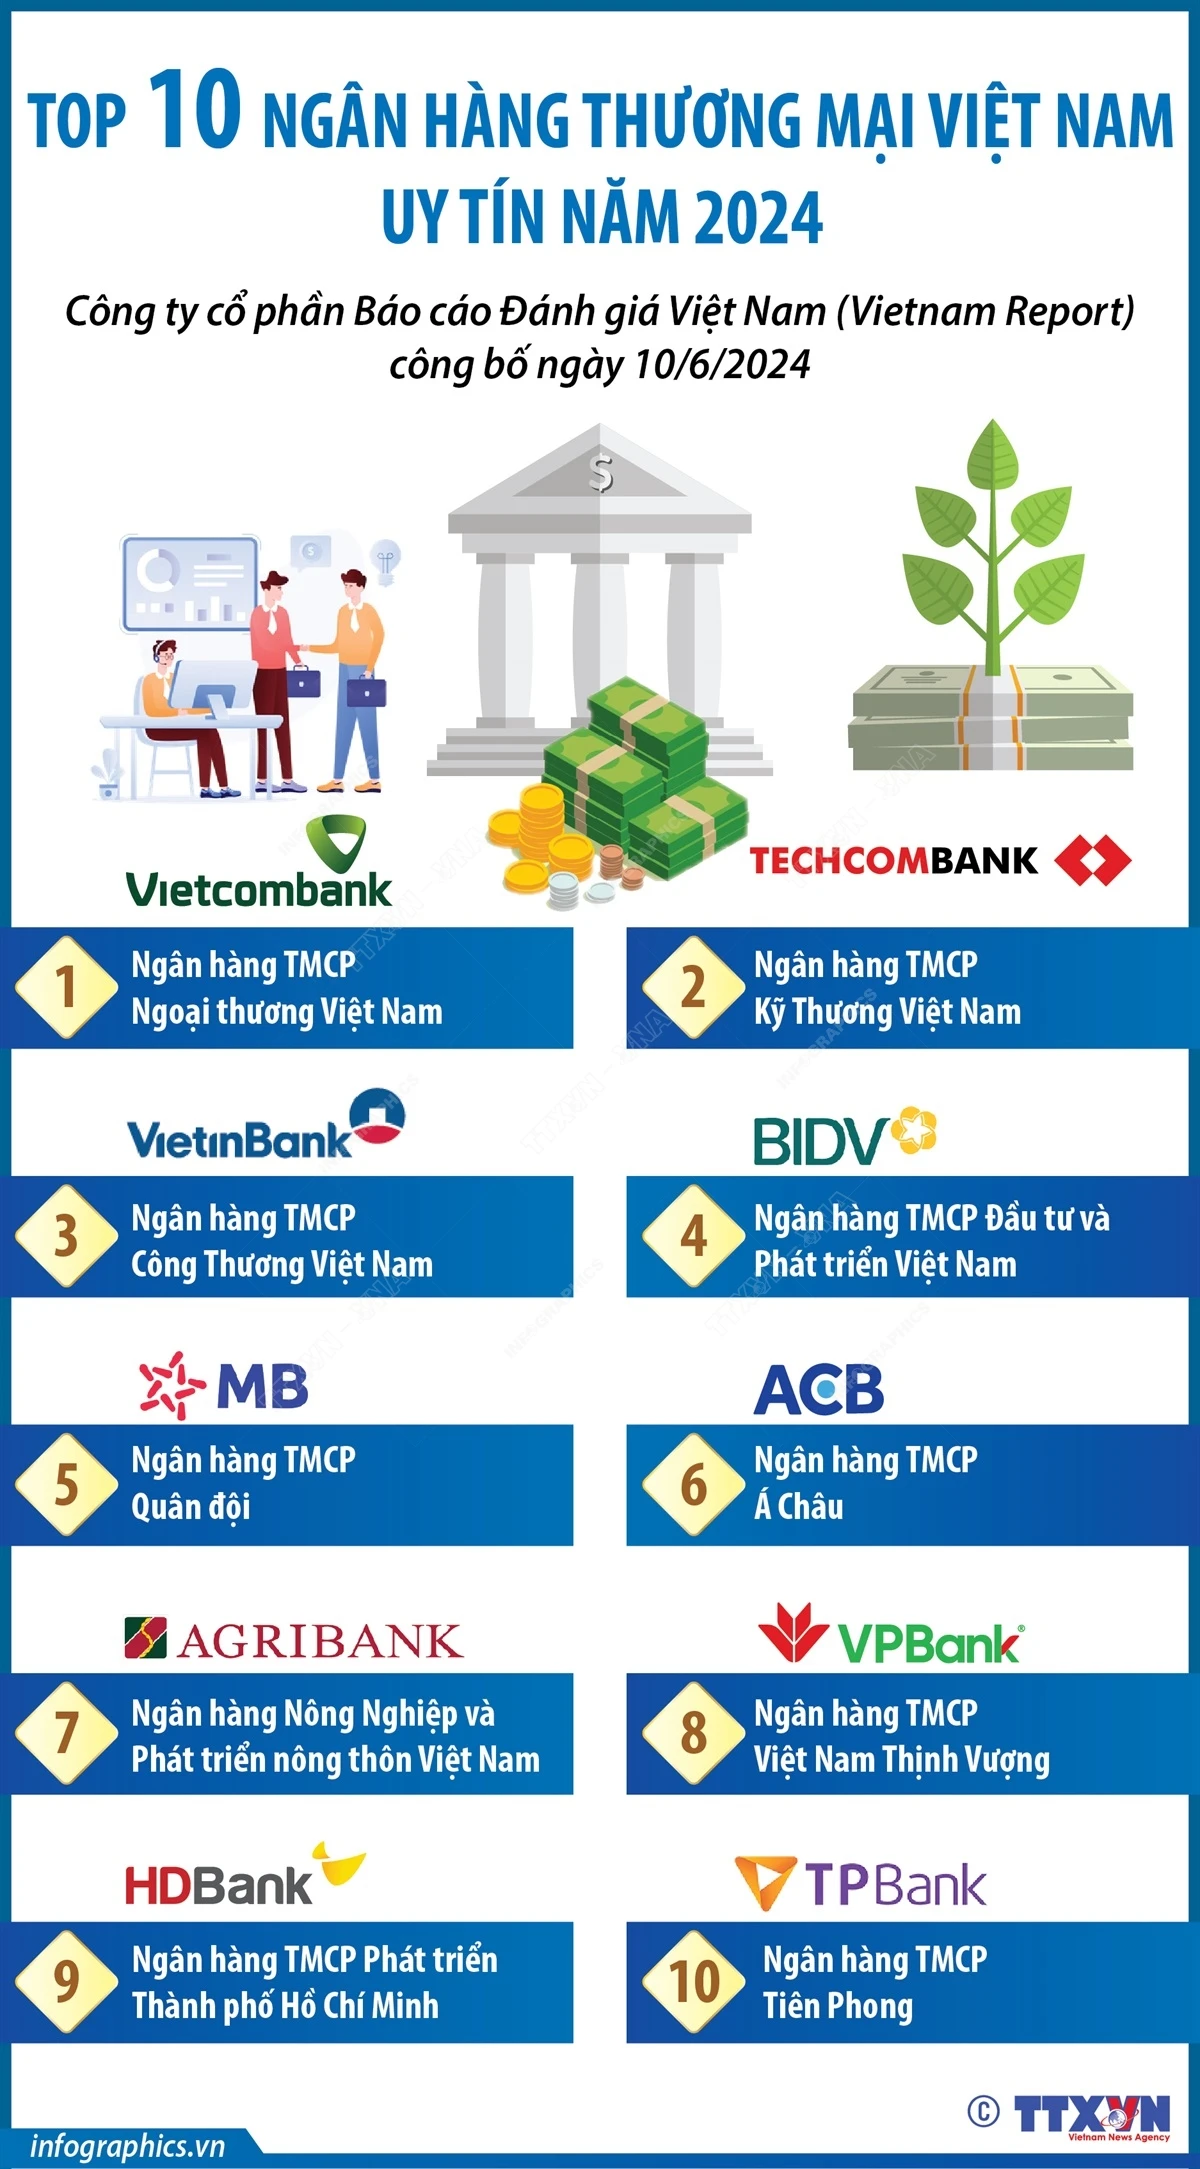 Top 10 ngân hàng thương mại Việt Nam uy tín năm 2024- Ảnh 1.